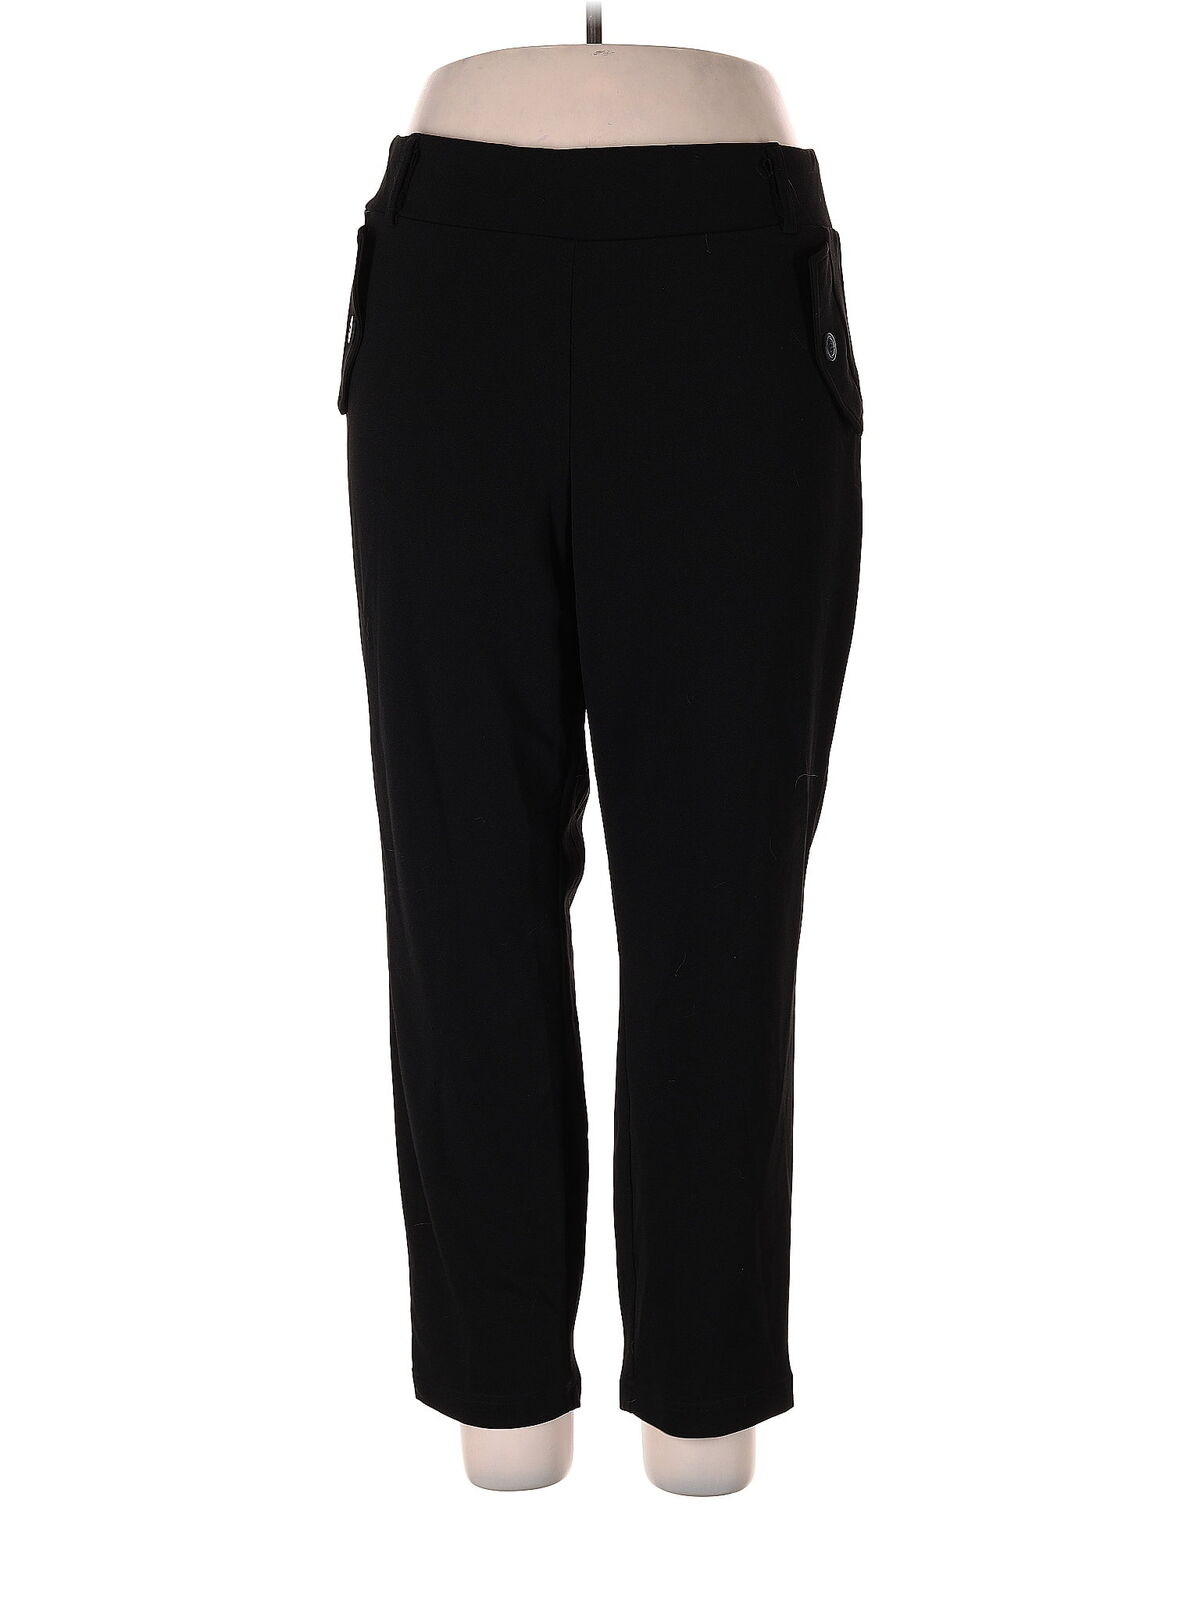 Soho Women Black Dress Pants 2X Plus - image 1